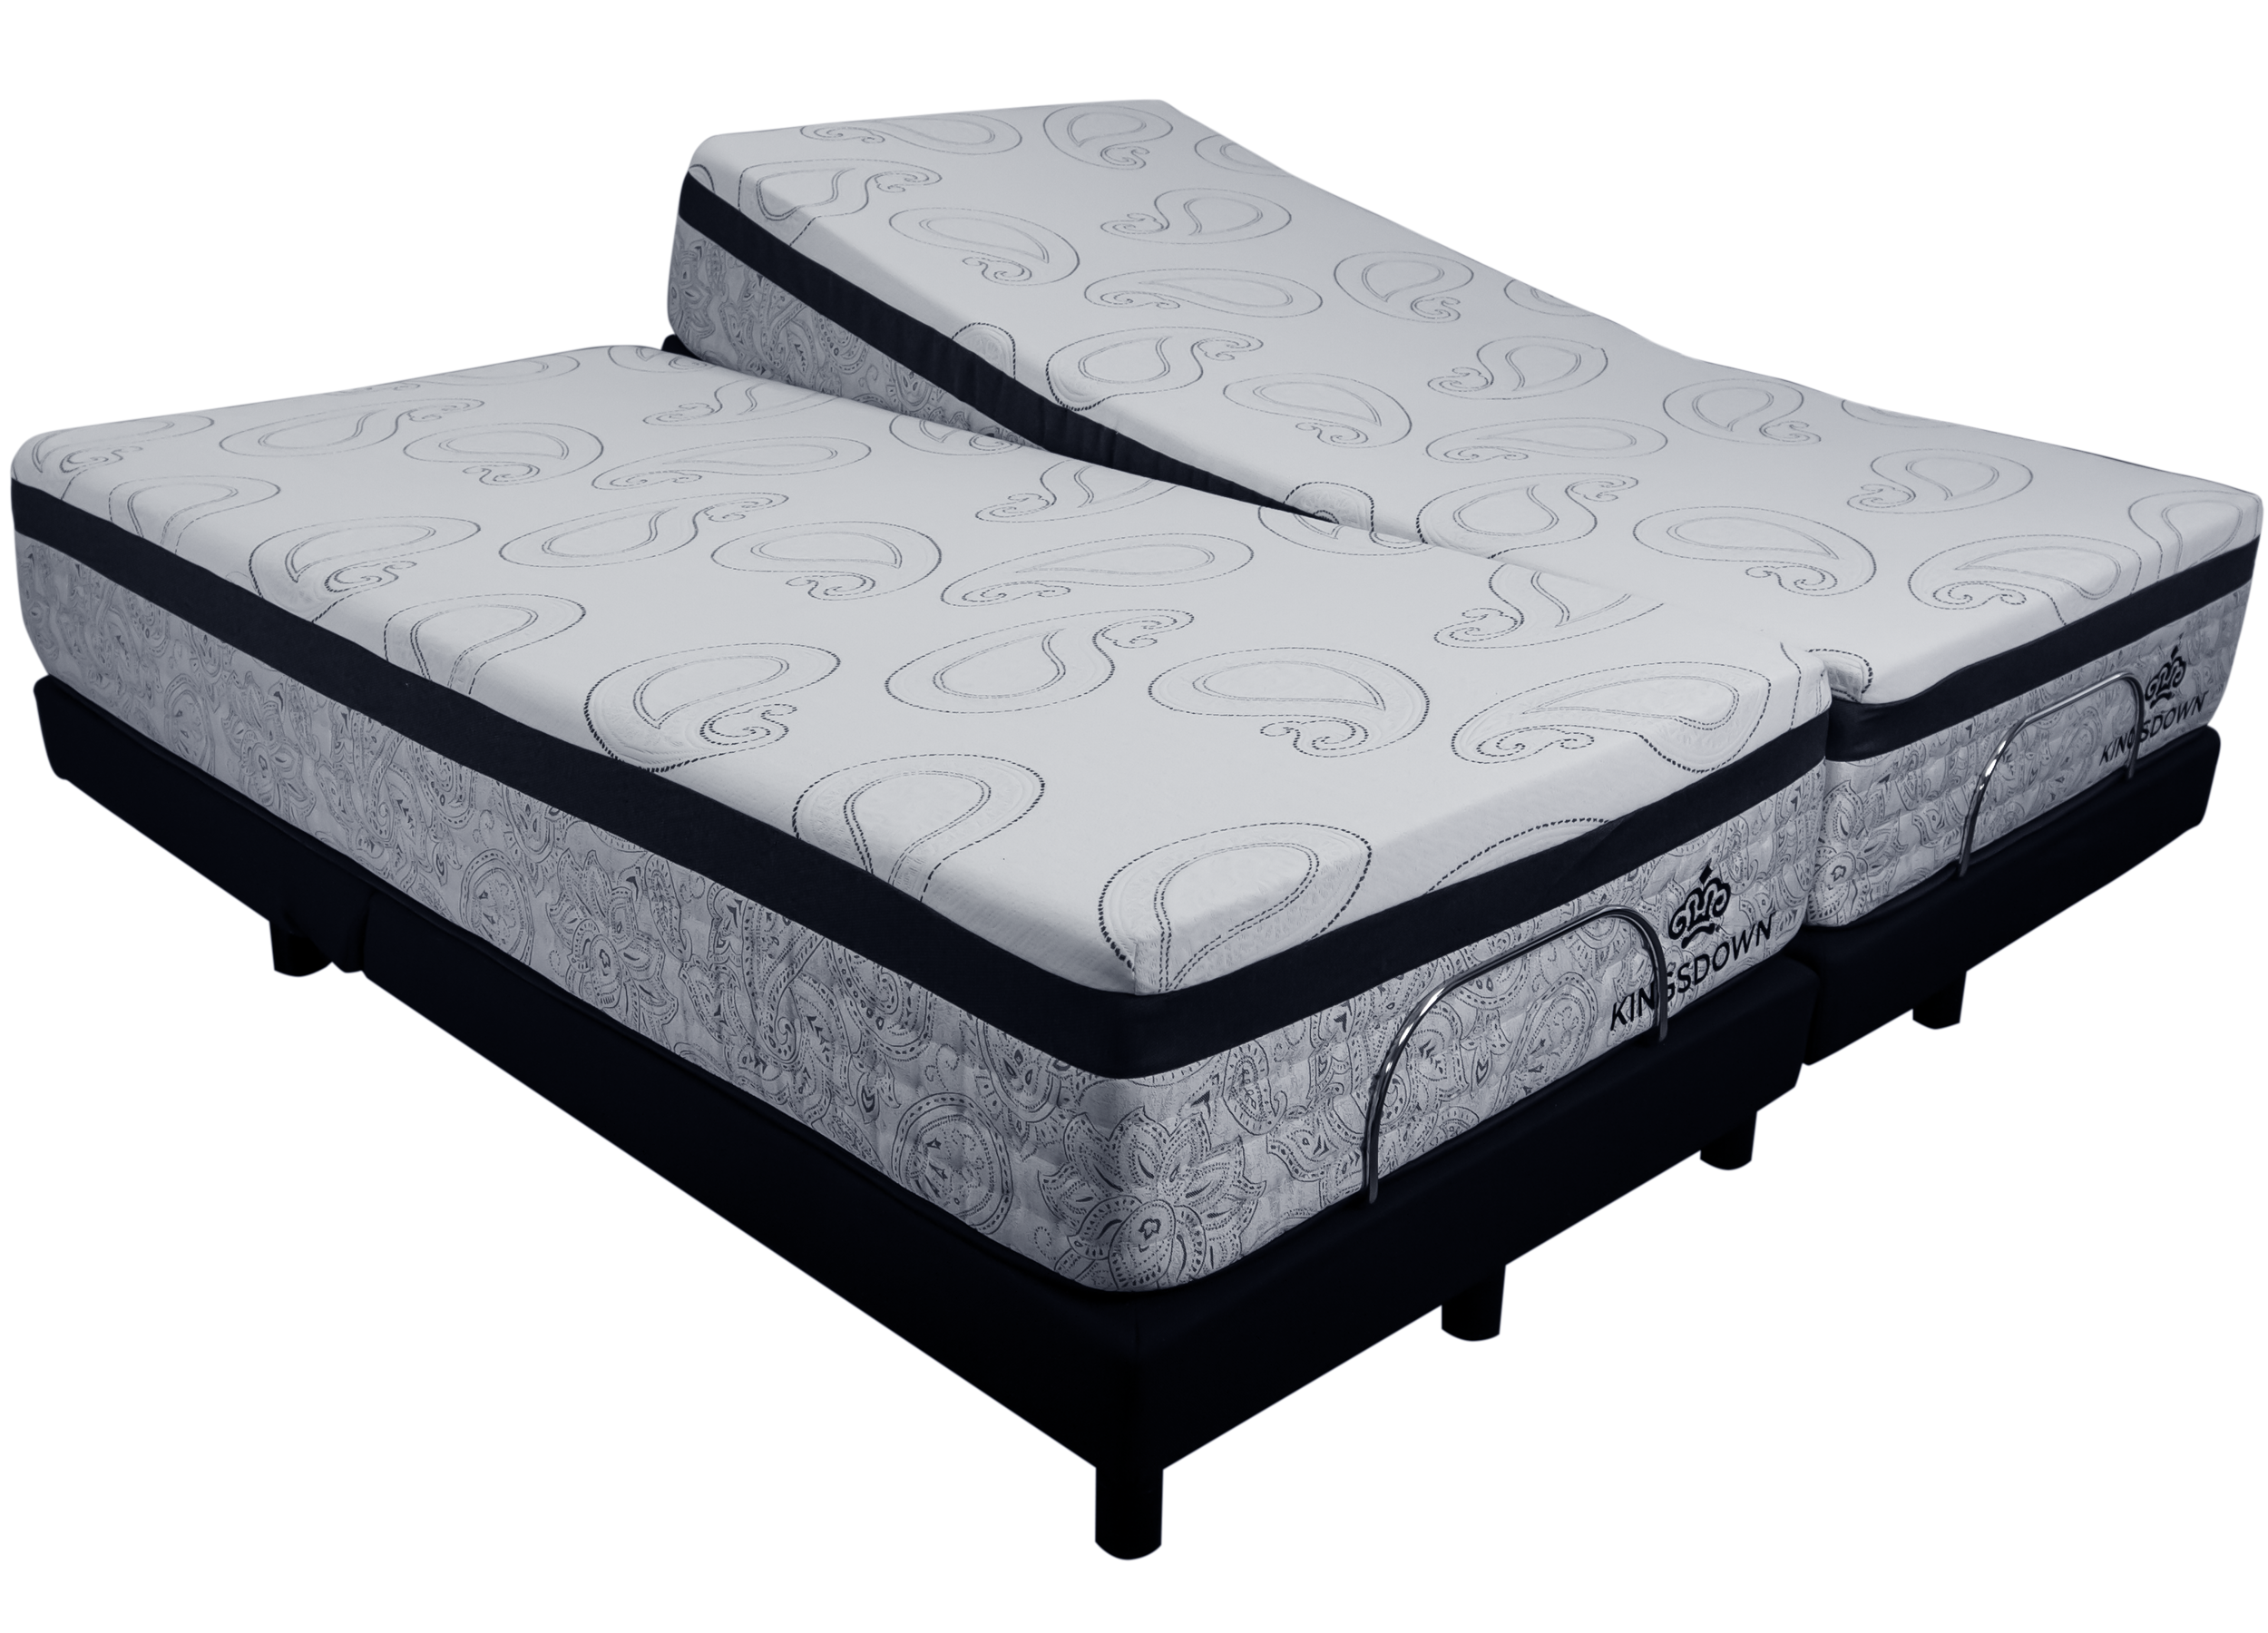 Demo Ensley Split Queen Adjustable Bed Package